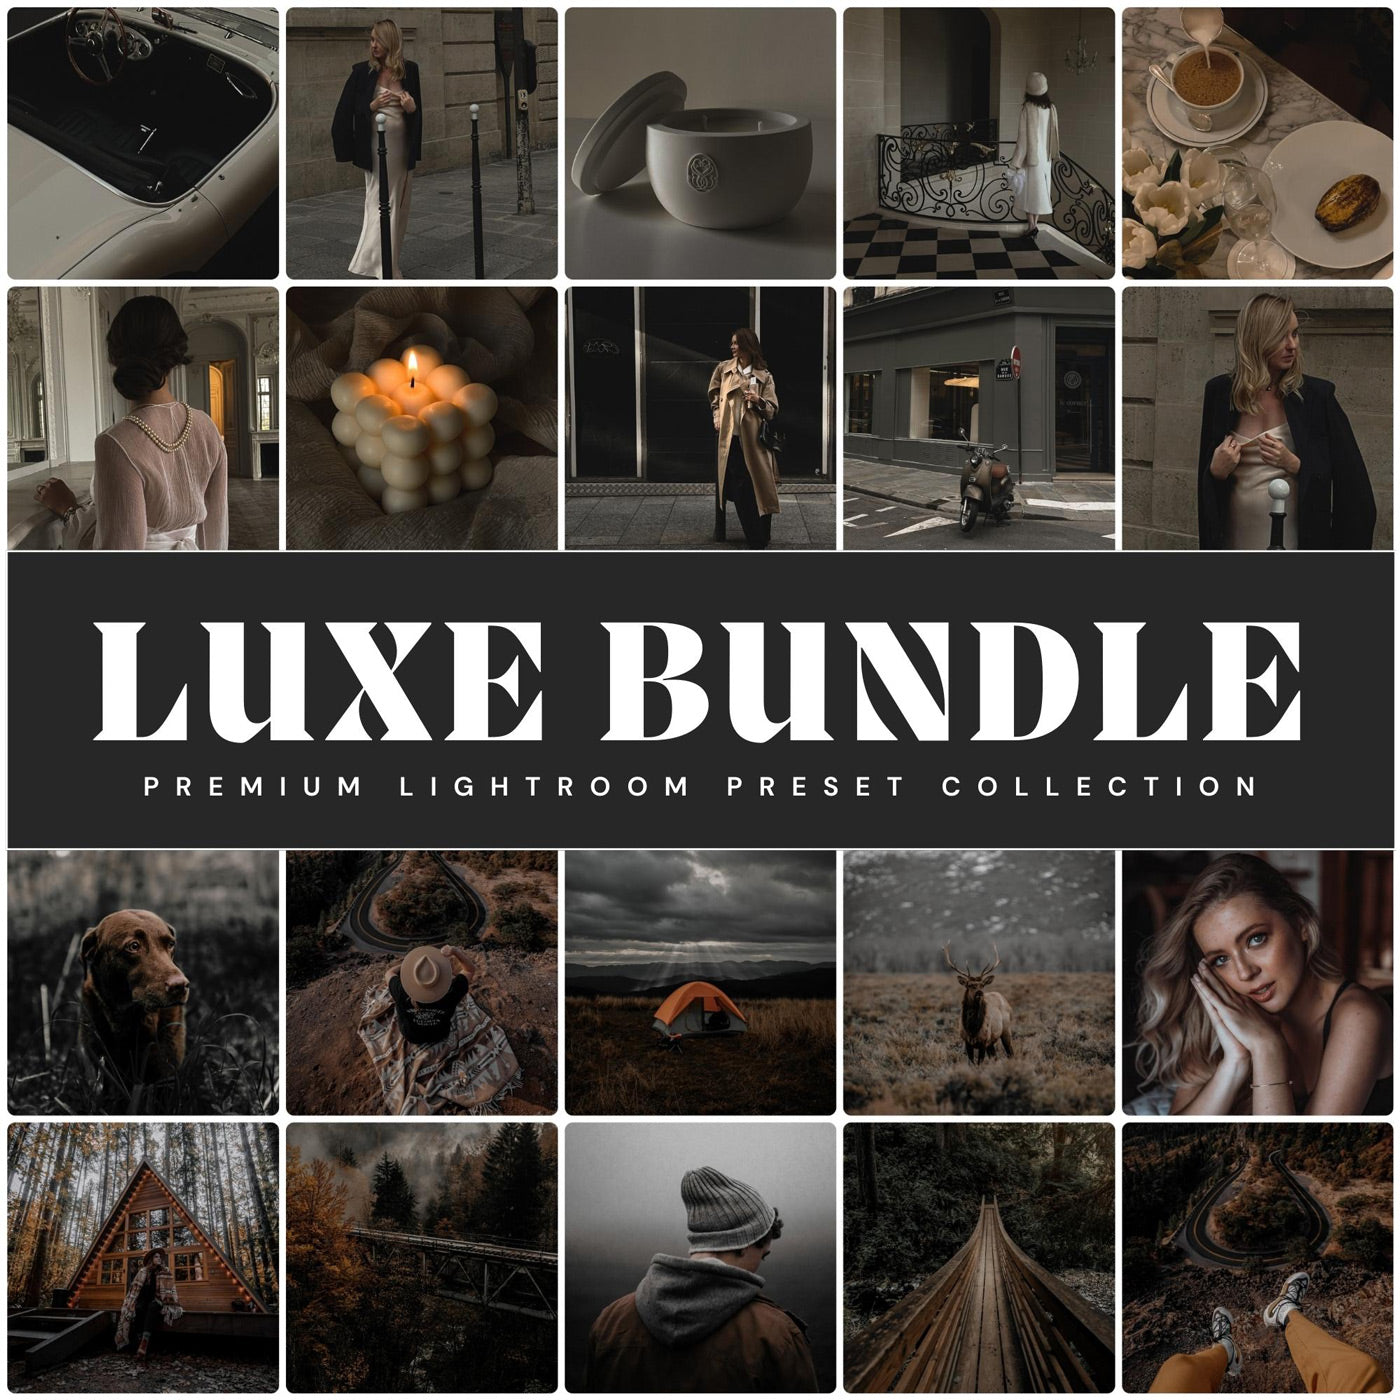 Lou & Marks Presets Luxe Lightroom Preset Bundle Best Presets For Adobe Lightroom